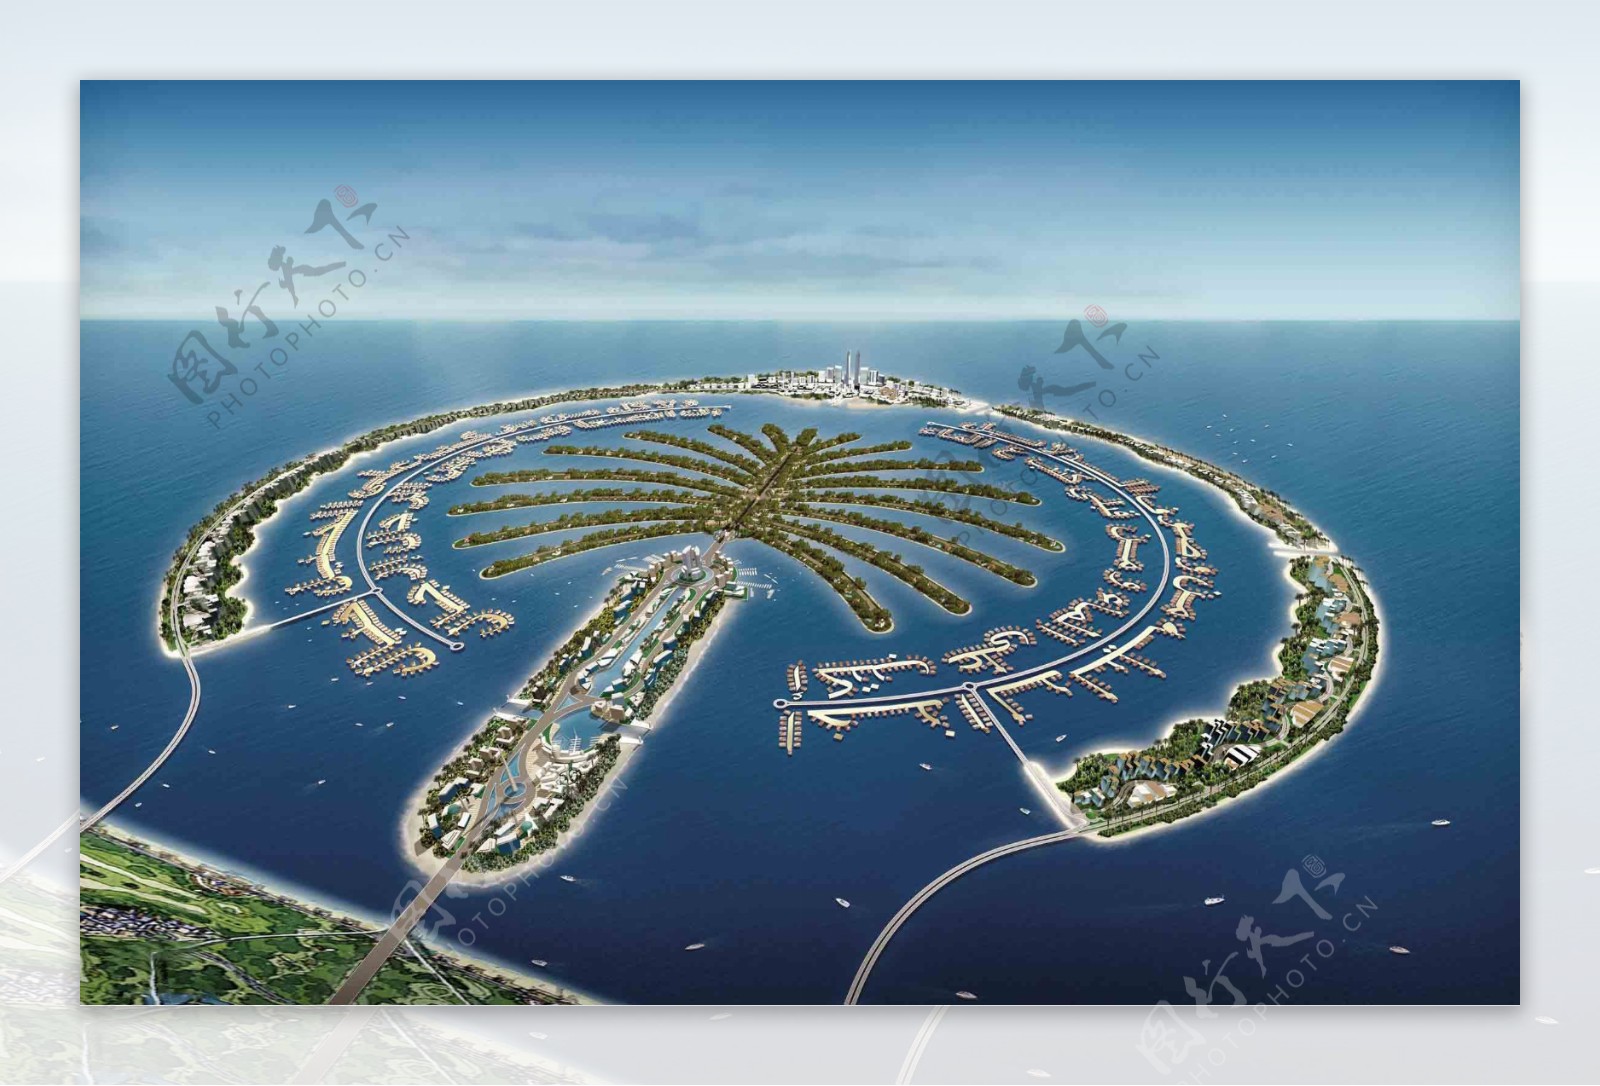 迪拜棕榈岛图片大全-迪拜棕榈岛高清图片下载-觅知网